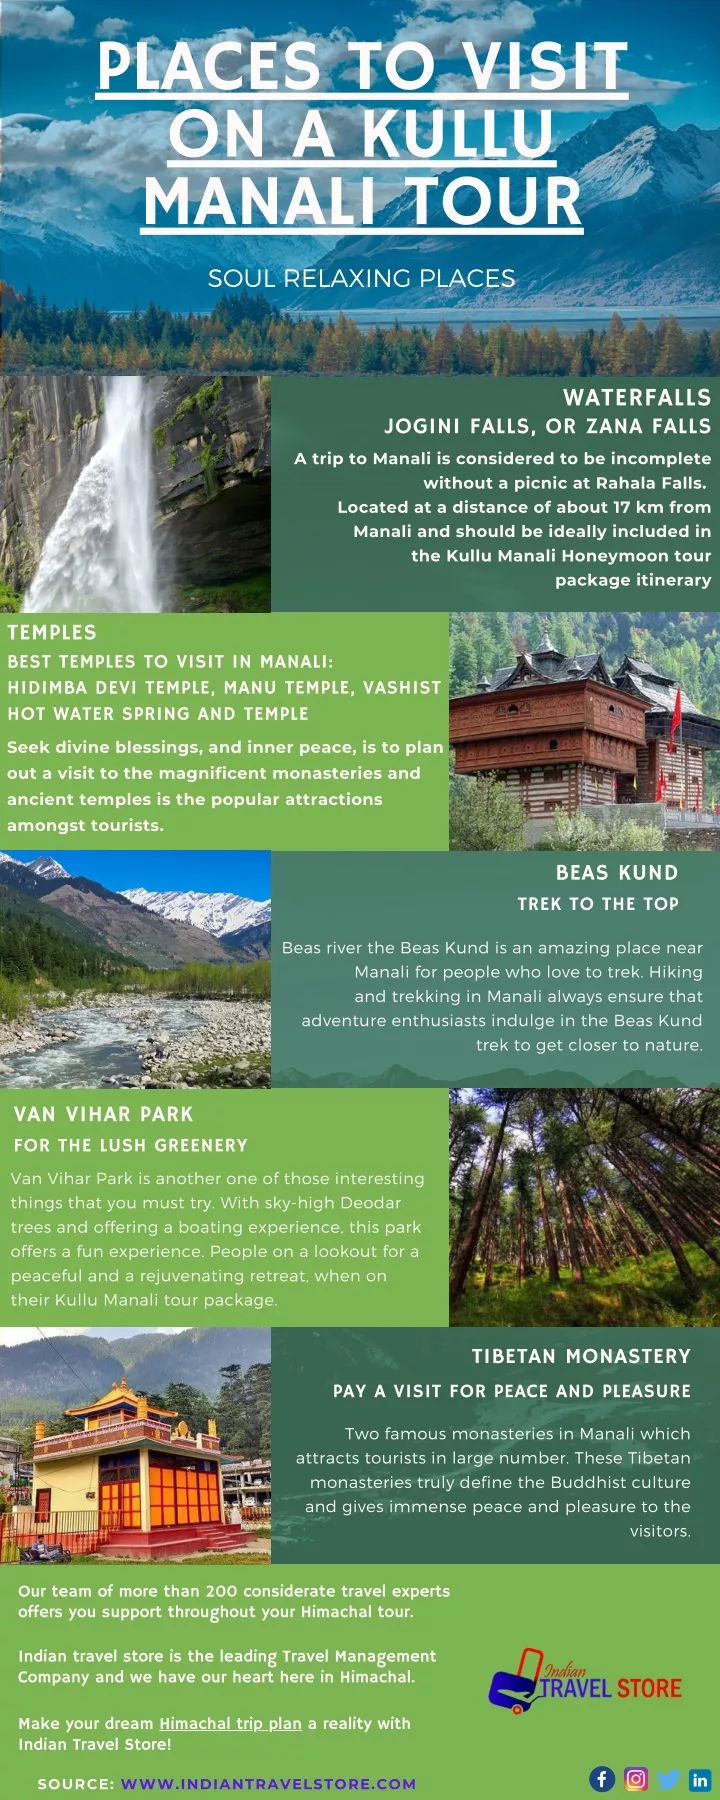 places to visit on a kullu manali tour